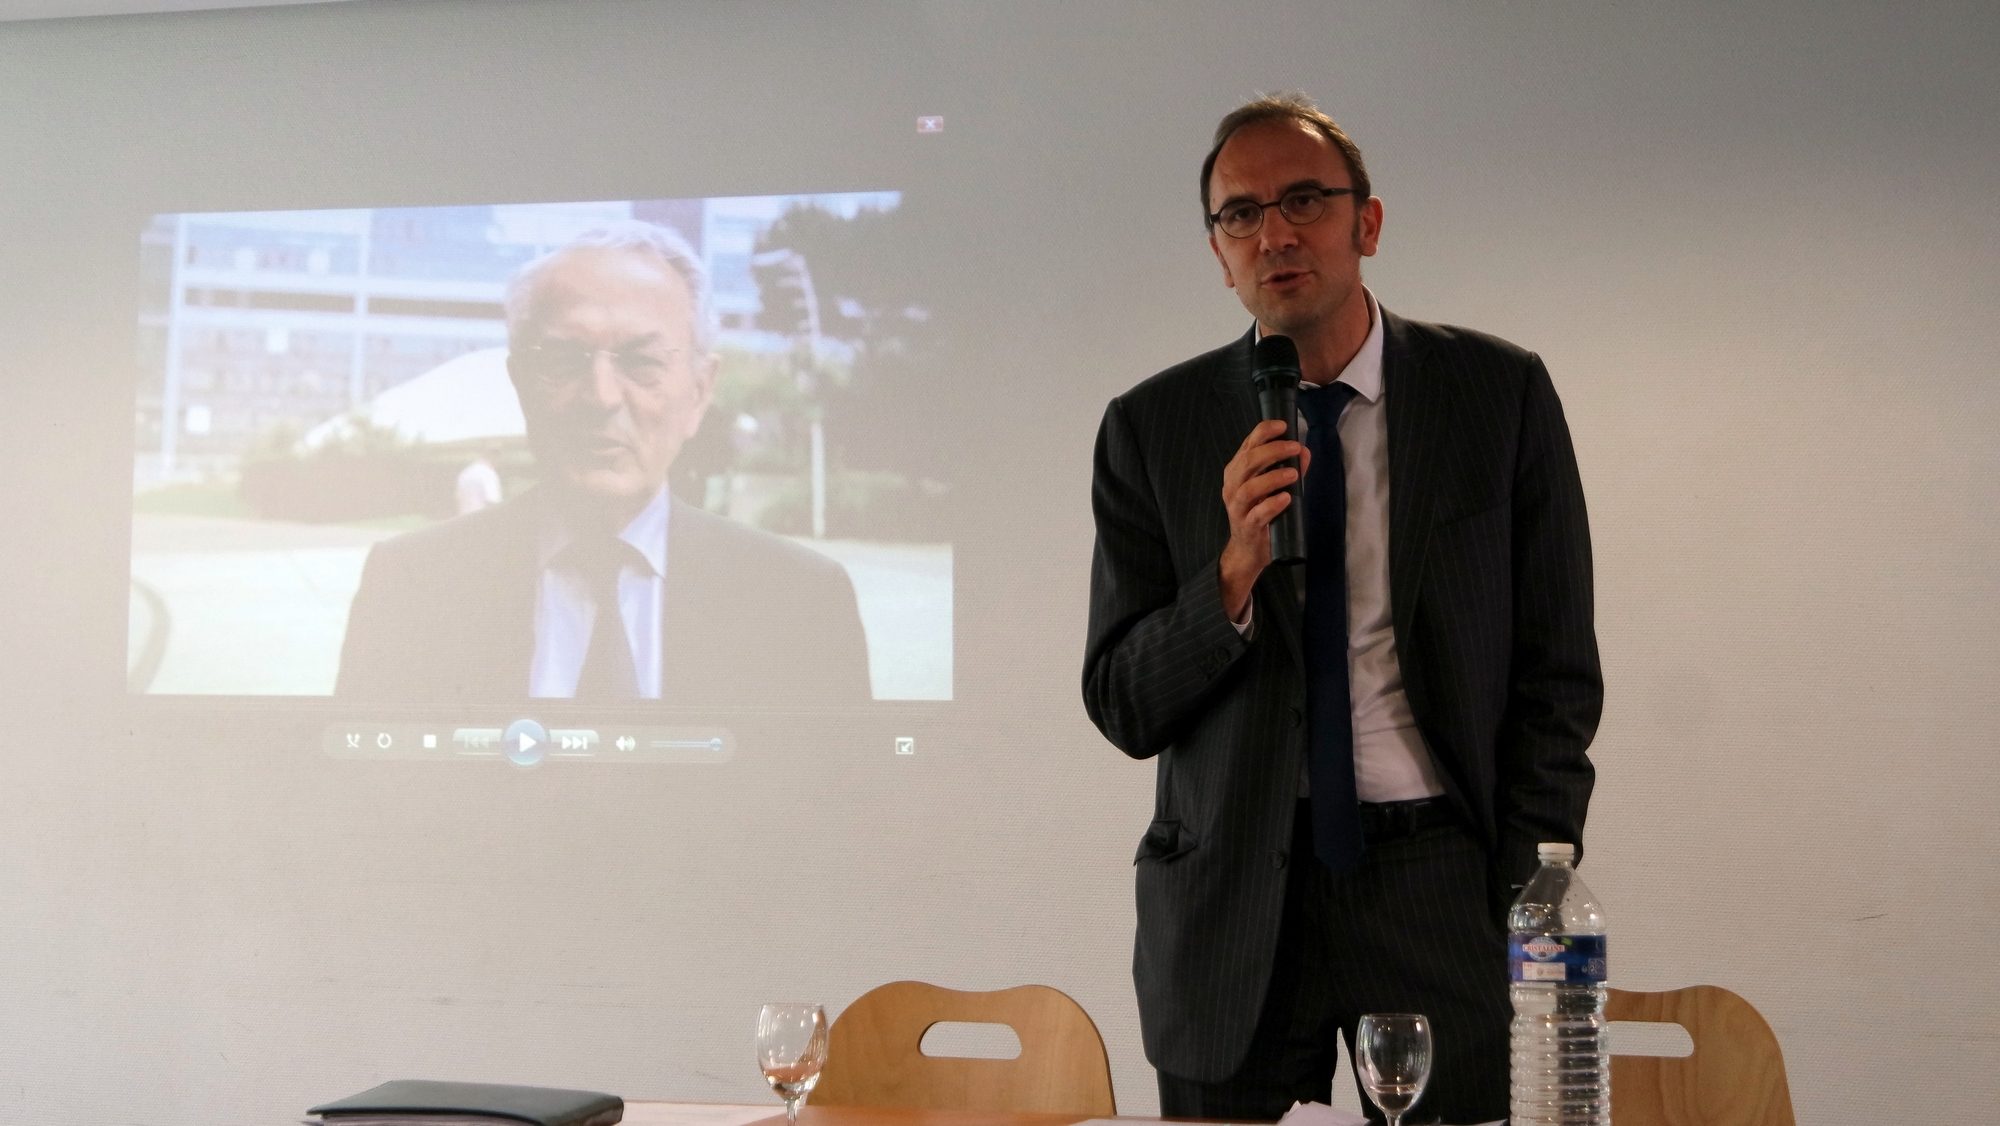 Le président de l'Association pour la mobilité longue des apprentis en Europe, Antoine Godbert, le 7 juillet, avant l'intervention vidéo du député européen Jean Arthuis.